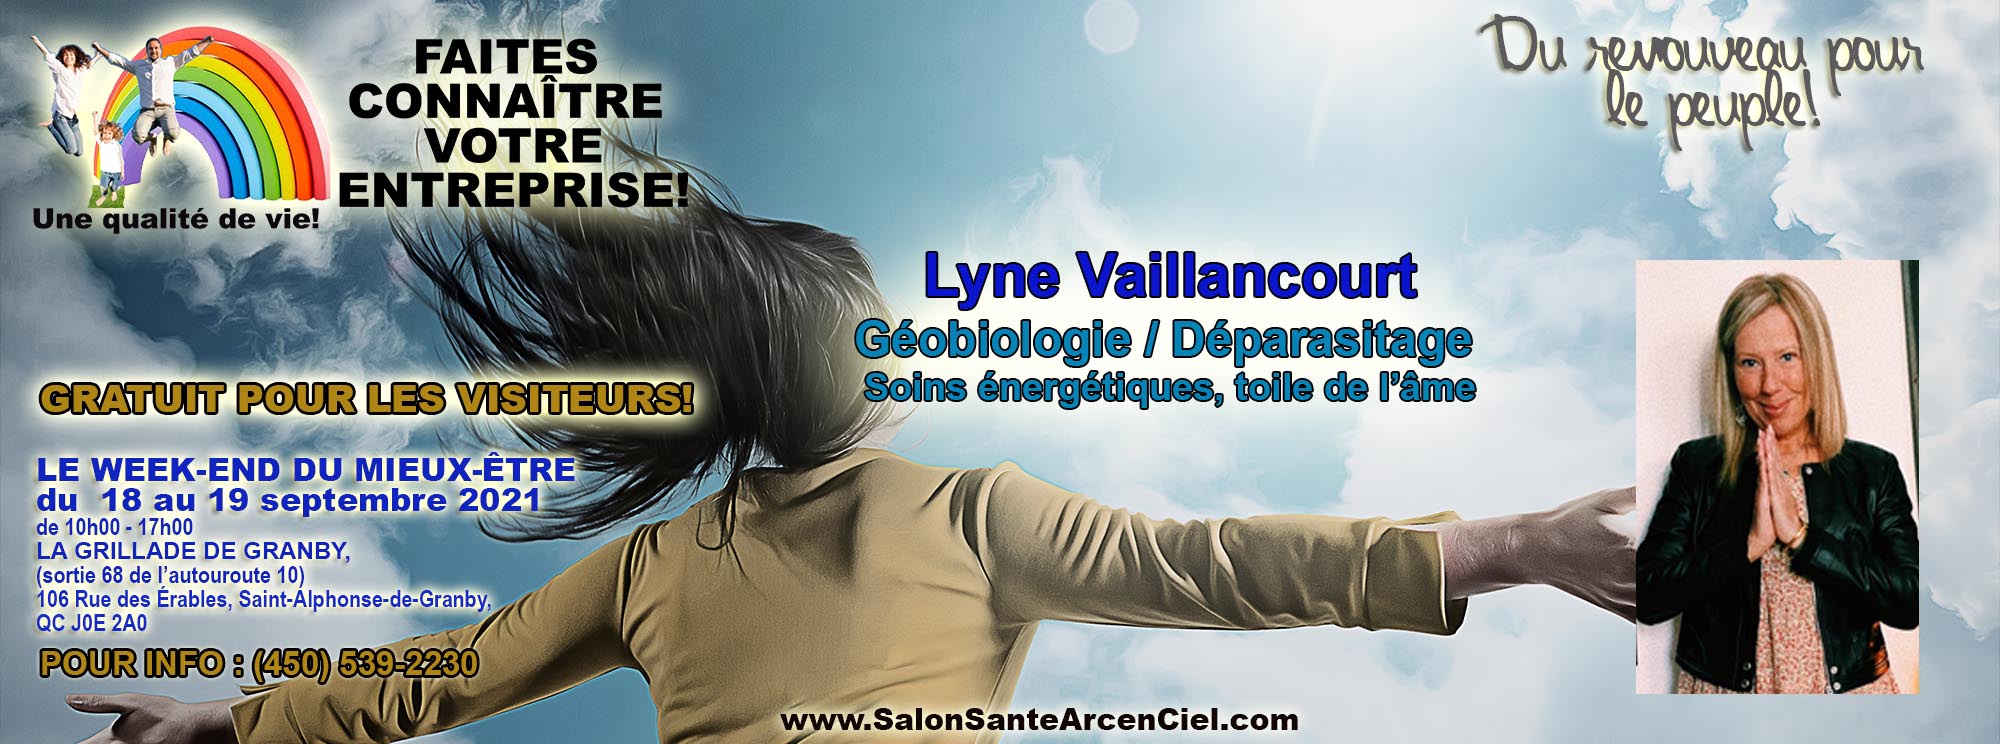 30 Lyne Vaillancourt Geobiologie EXPOSANTS PAGE PRO NO1  Salon Sante Arc enCiel 18 19 Septembre2021COPY